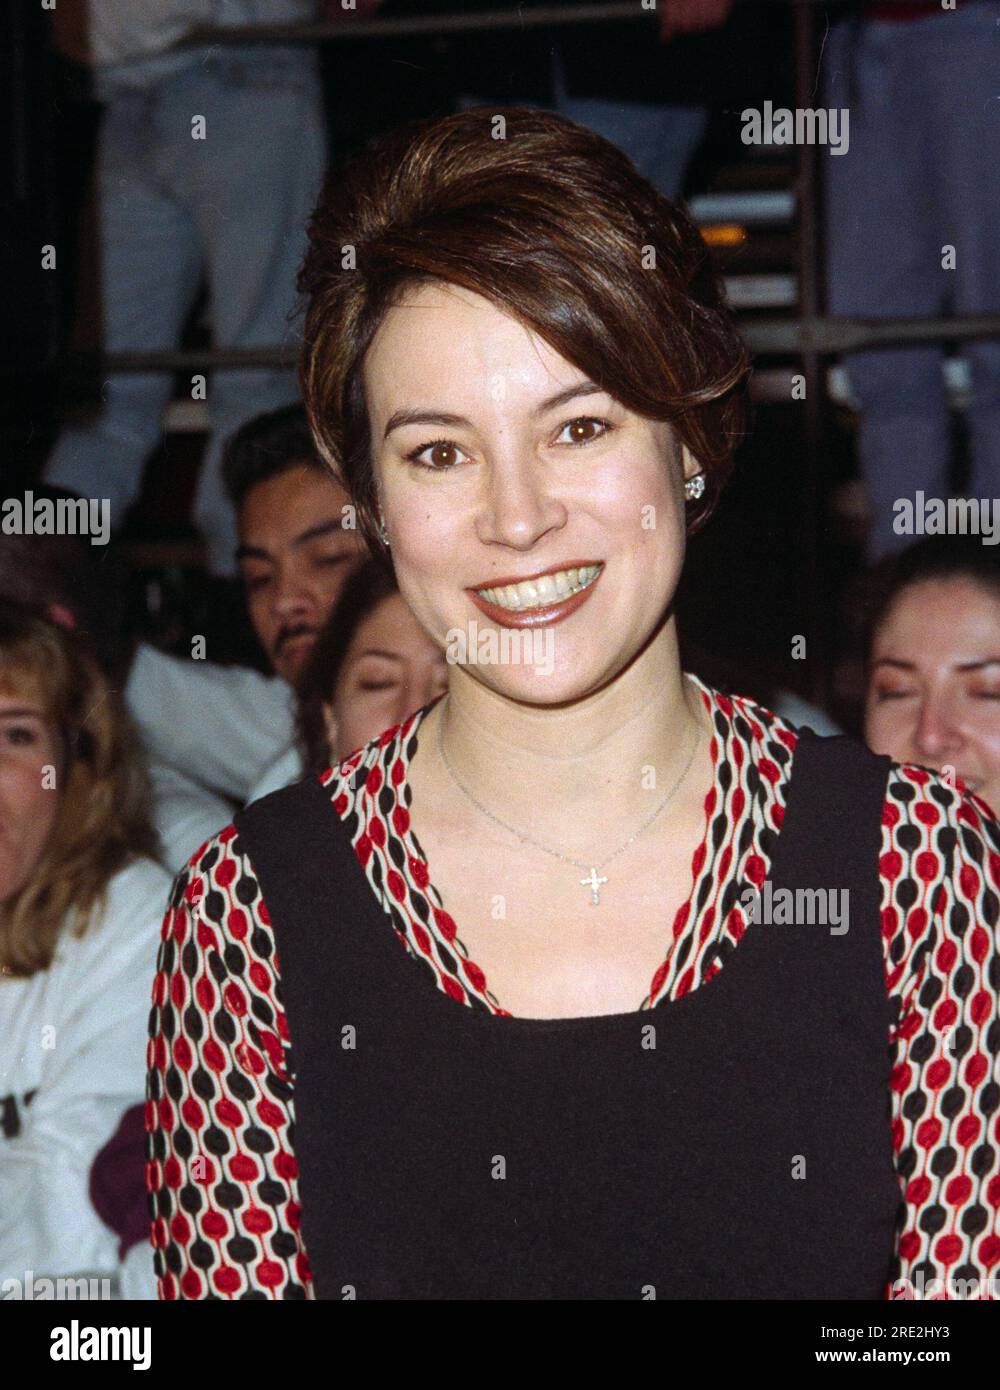 ARCHIV: LOS ANGELES, KALIFORNIEN. 6. Februar 1996: Schauspielerin Jennifer Tilly bei der Premiere von "Broken Arrow". Bild: Paul Smith / Featureflash Stockfoto